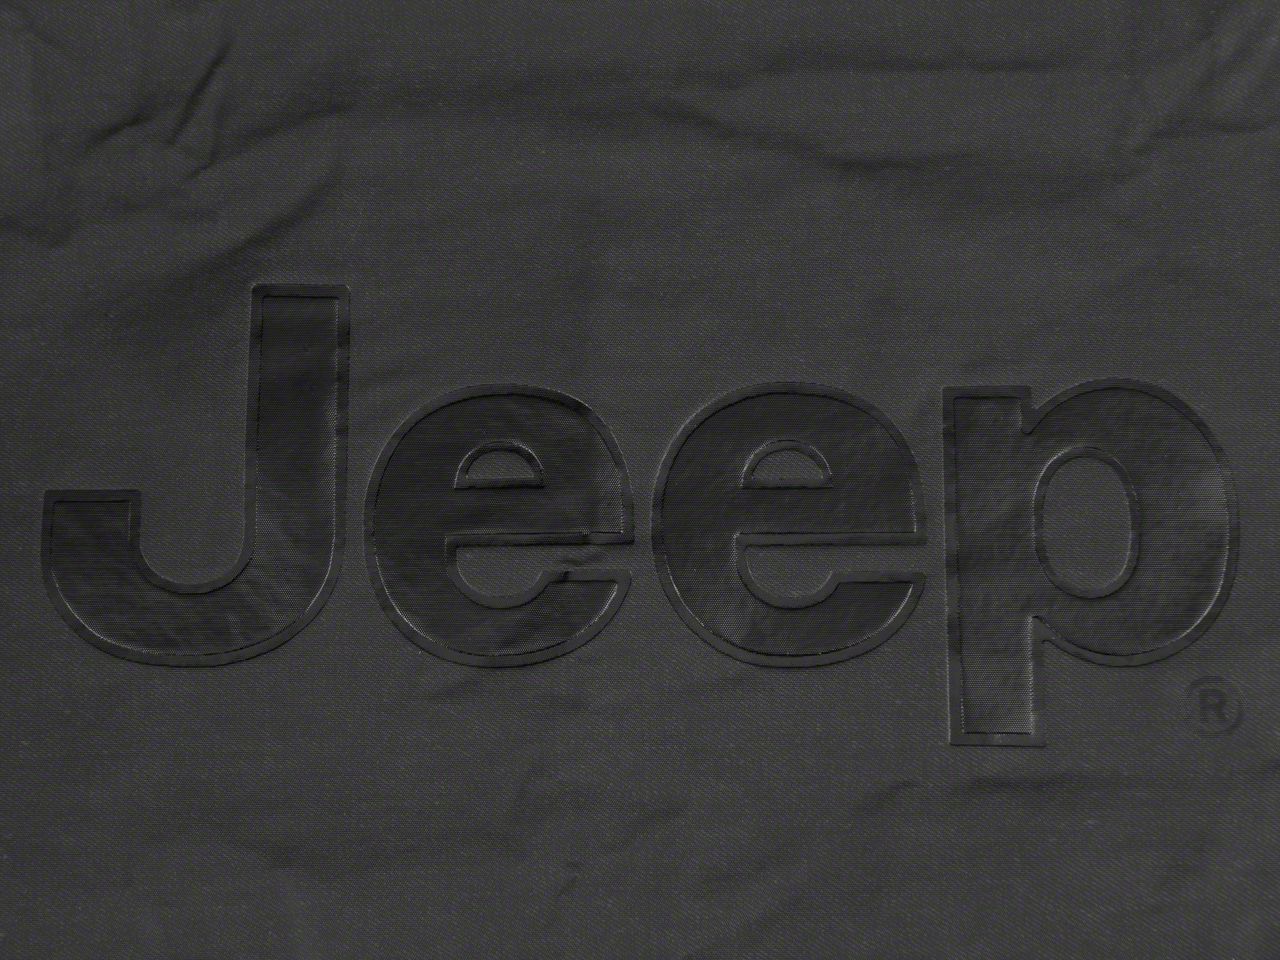 Mopar Jeep Wrangler Black Denim W Logo Spare Tire Cover 32-33 Inch OEM - 2